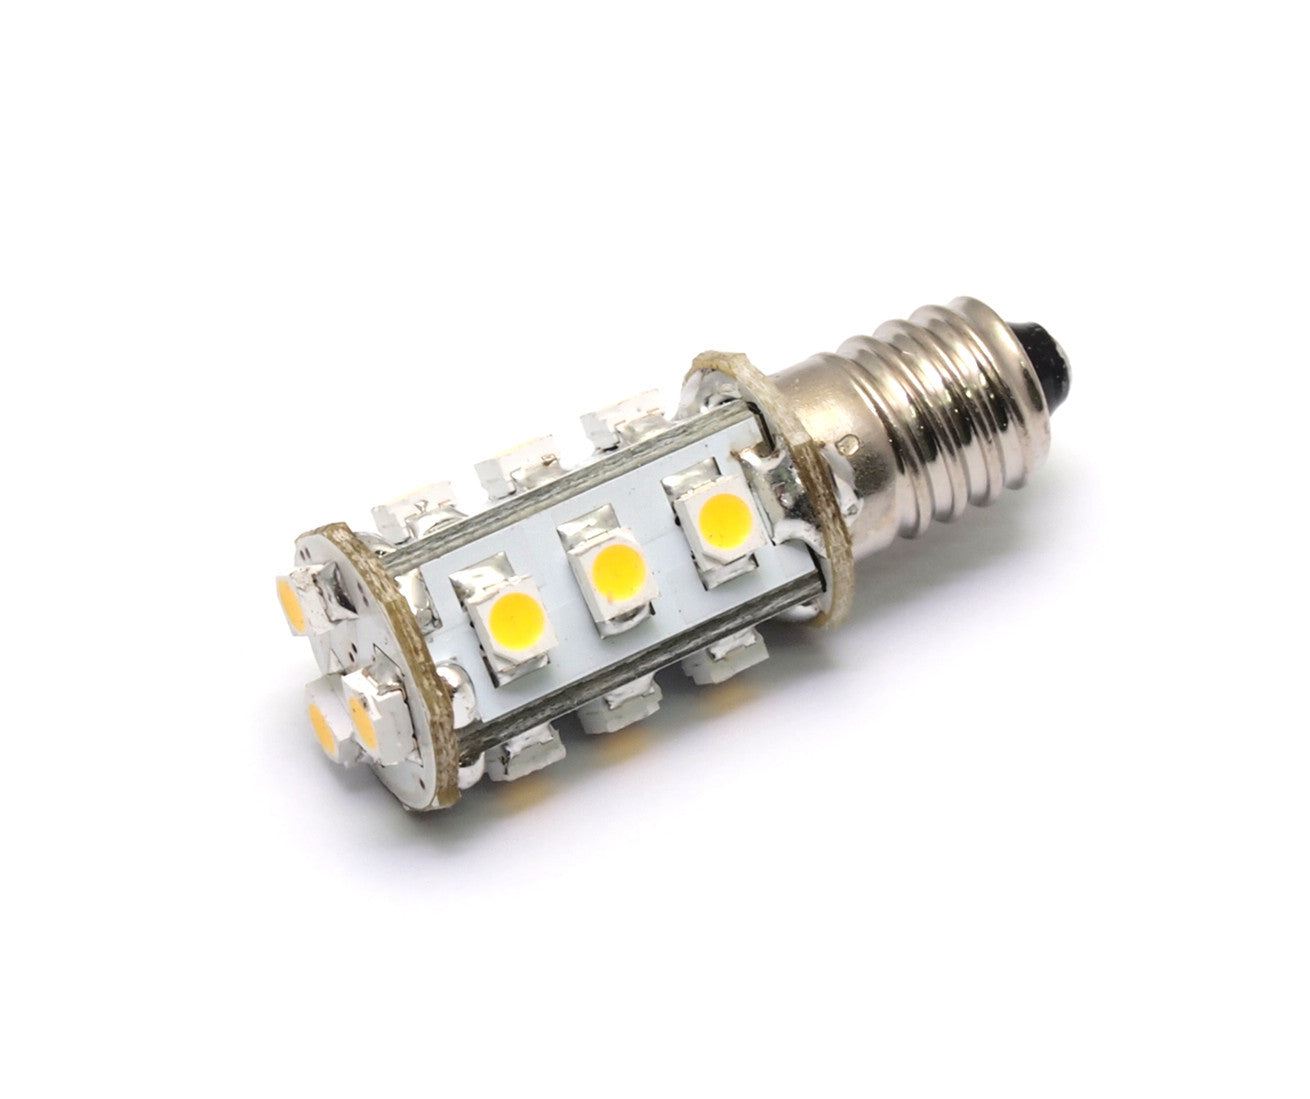 12V Cluster LED Light Bulb - Screw Fitting Lamp, 6 Pack / Warm White